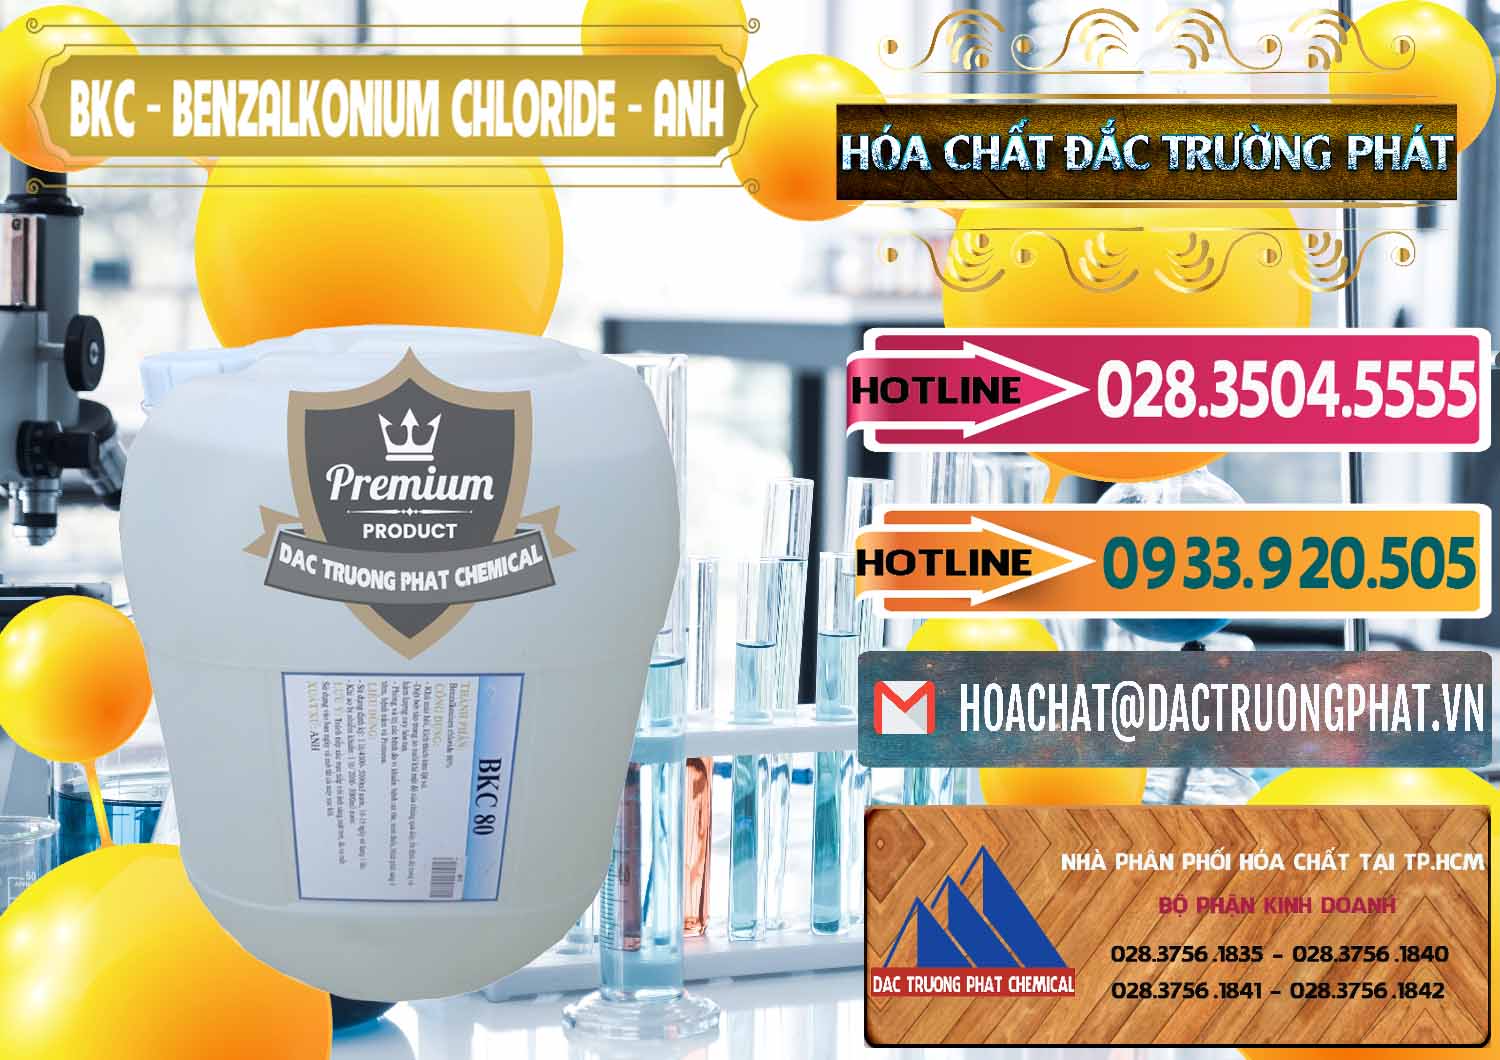 Đơn vị chuyên phân phối _ bán BKC - Benzalkonium Chloride Anh Quốc Uk Kingdoms - 0415 - Nơi chuyên nhập khẩu & phân phối hóa chất tại TP.HCM - dactruongphat.vn